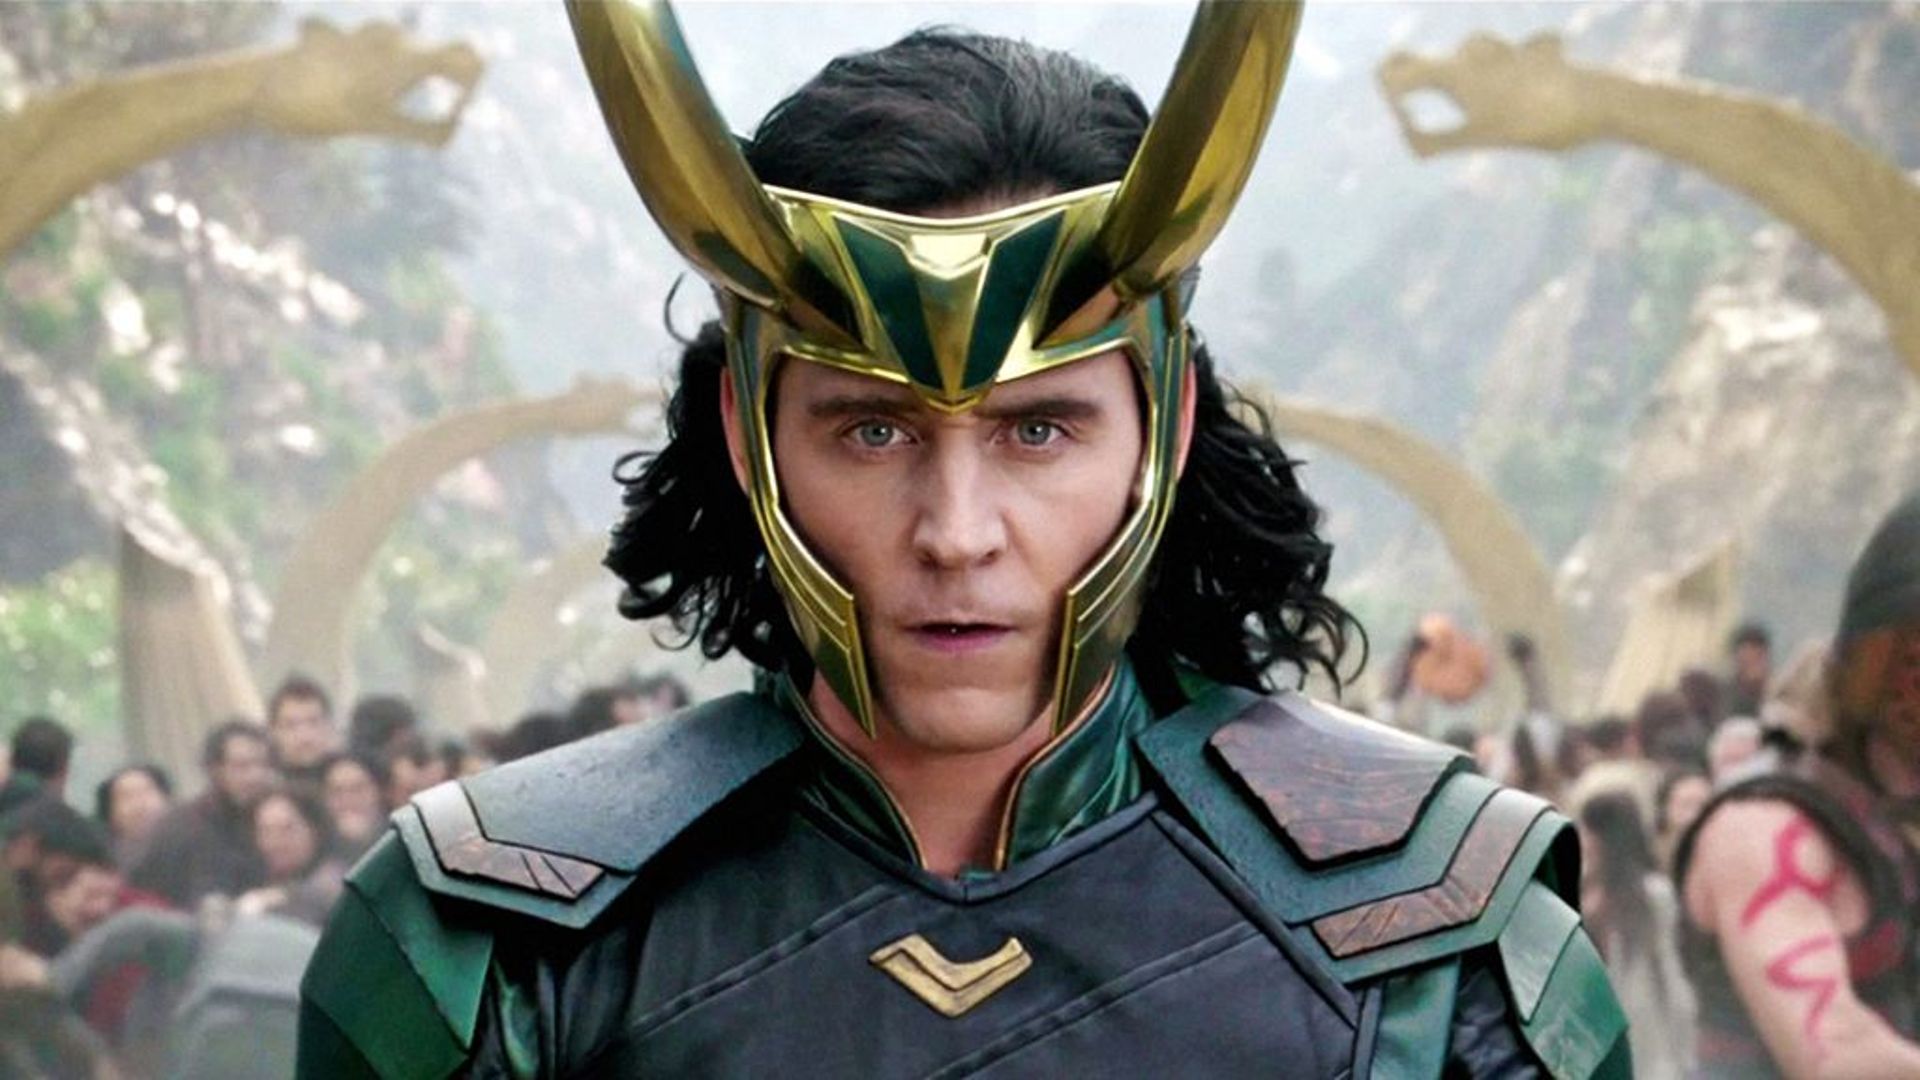 Loki loved villains